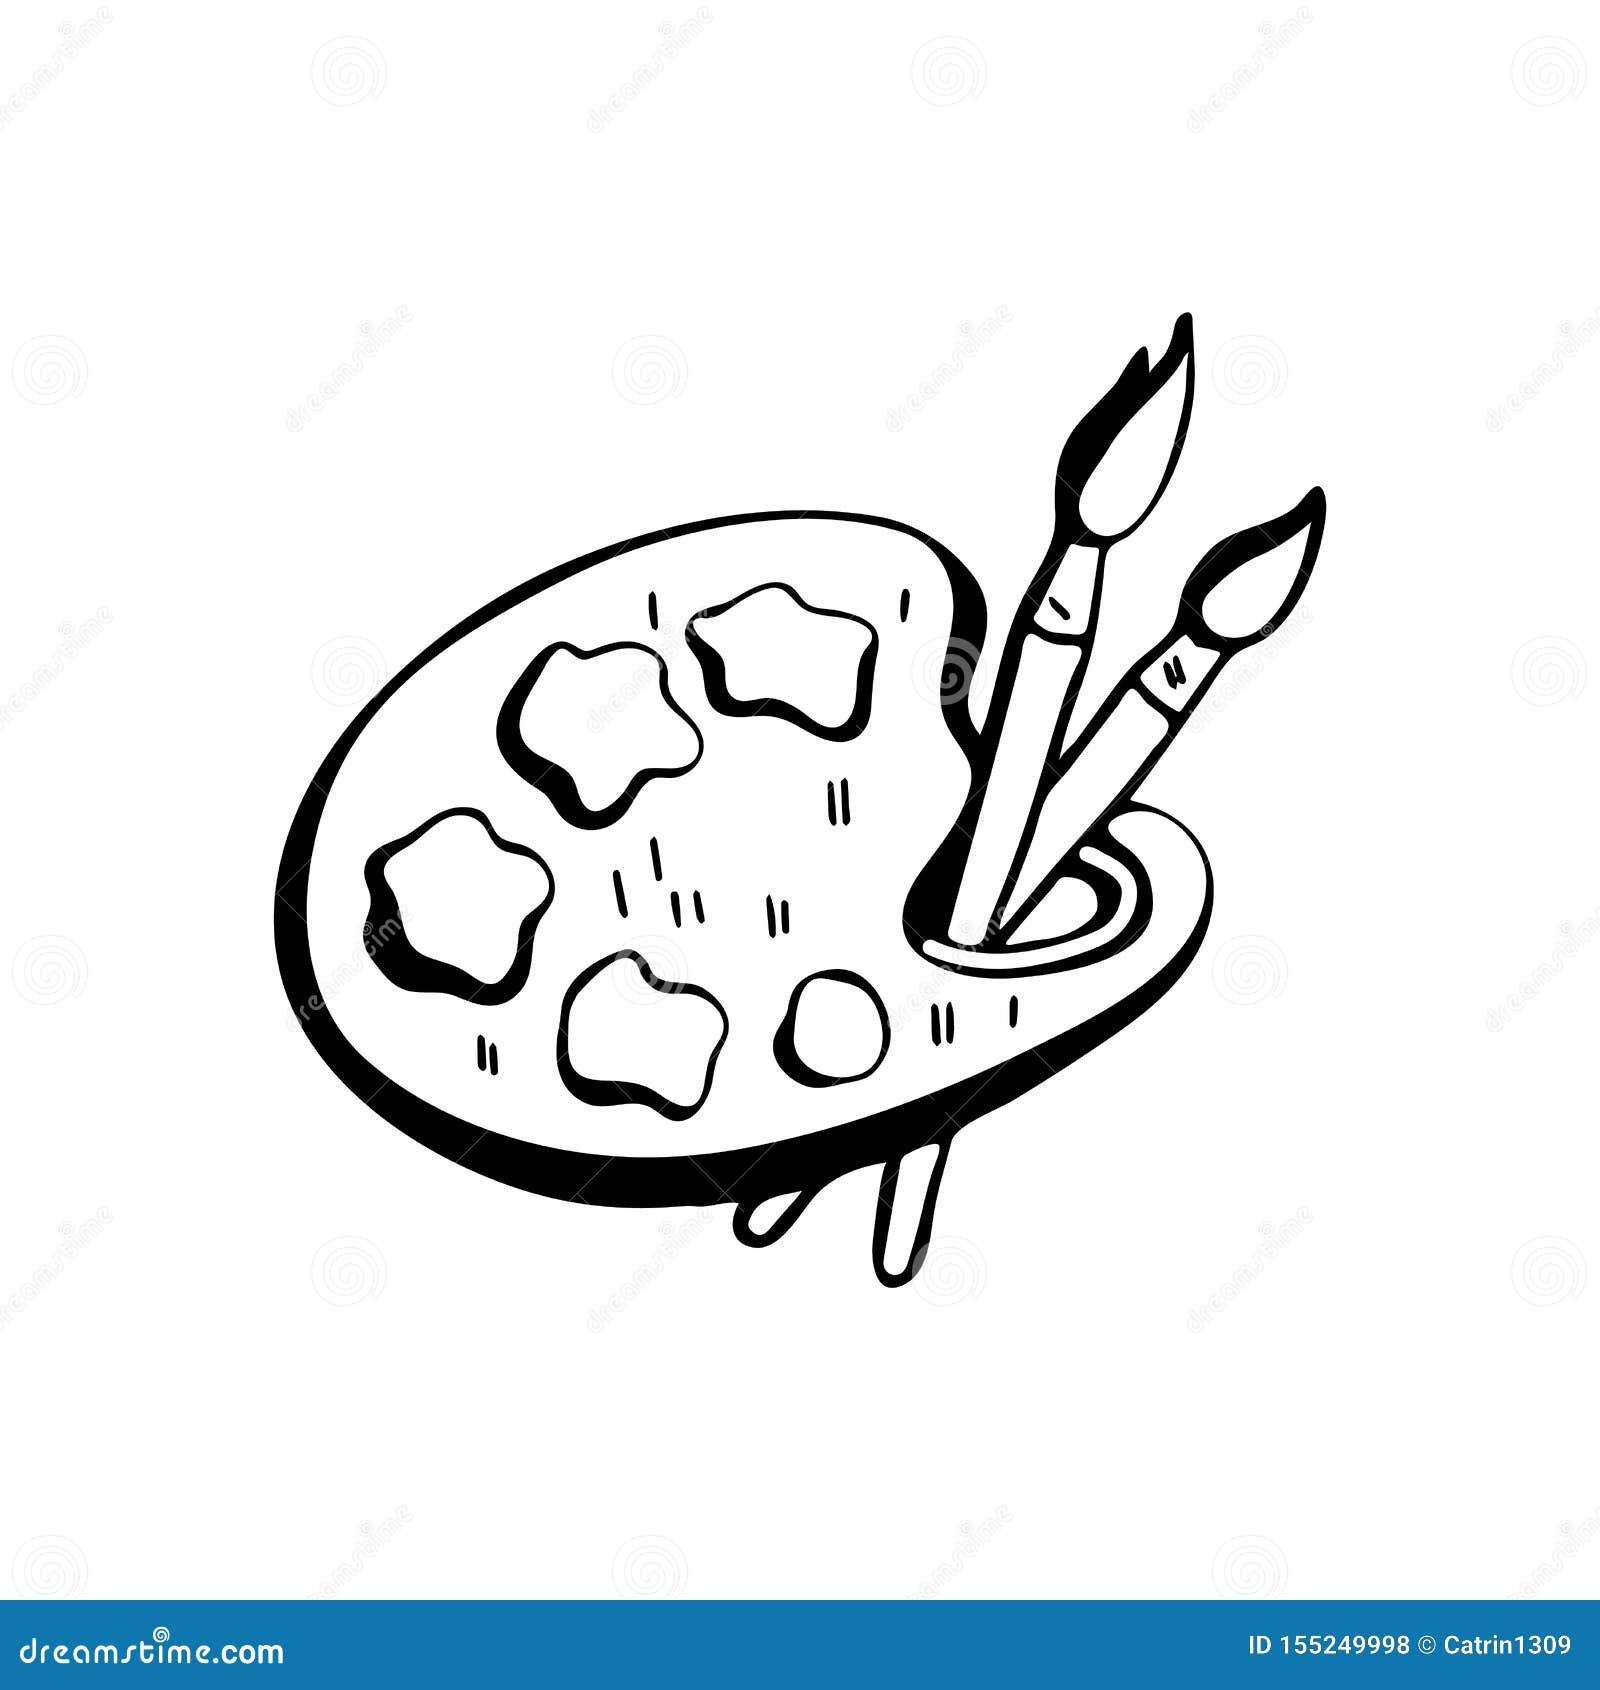 paintbrush Emoji - Download for free – Iconduck